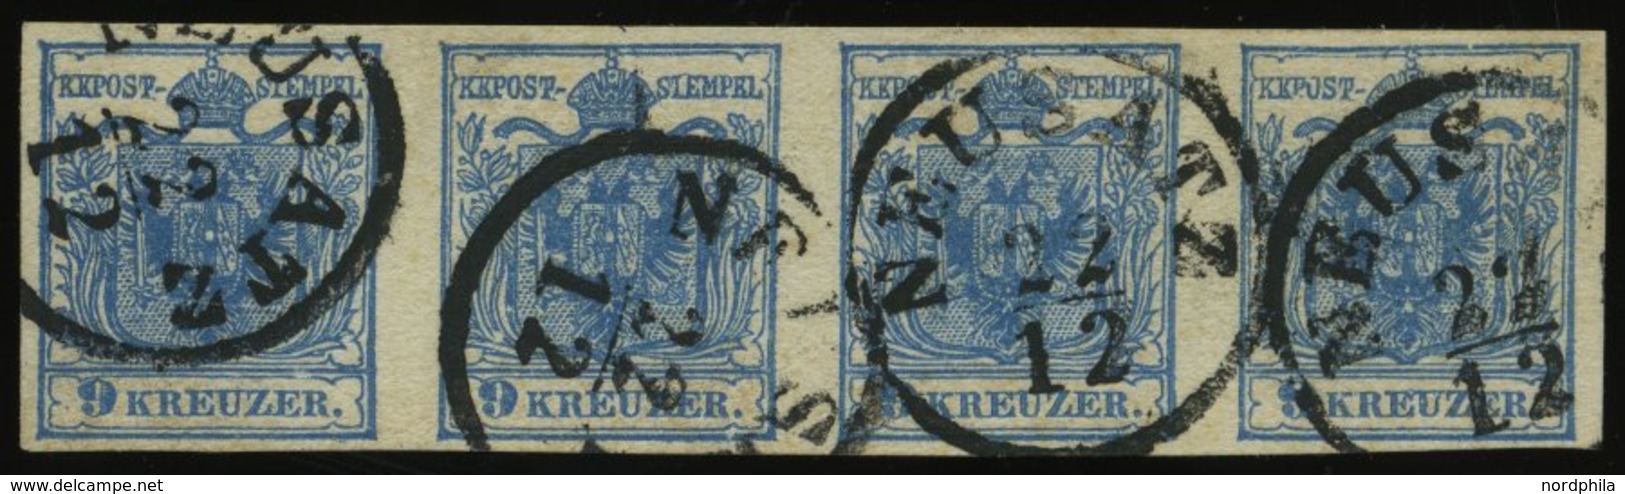 ÖSTERREICH 5Y O, 1854, 9 Kr. Blau, Maschinenpapier, Type IIIb, Im Waagerechten Viererstreifen, K1 NEUSATZ, Pracht, Fotoa - Usati